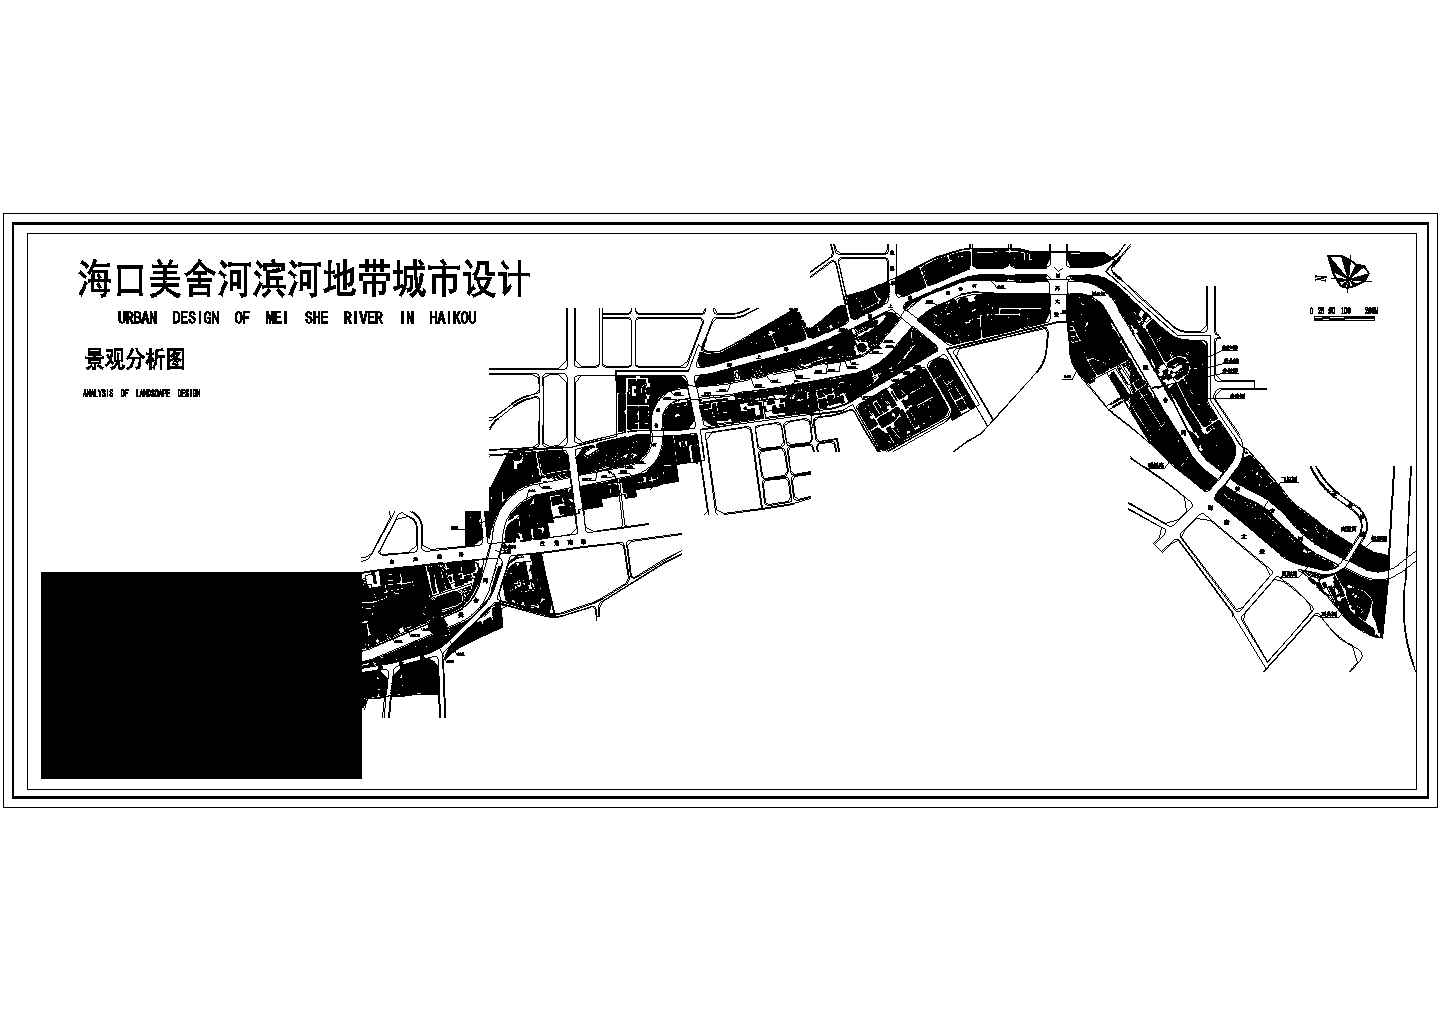 海口美舍河滨河地带城市设计cad总平面景观分析图（甲级院设计）